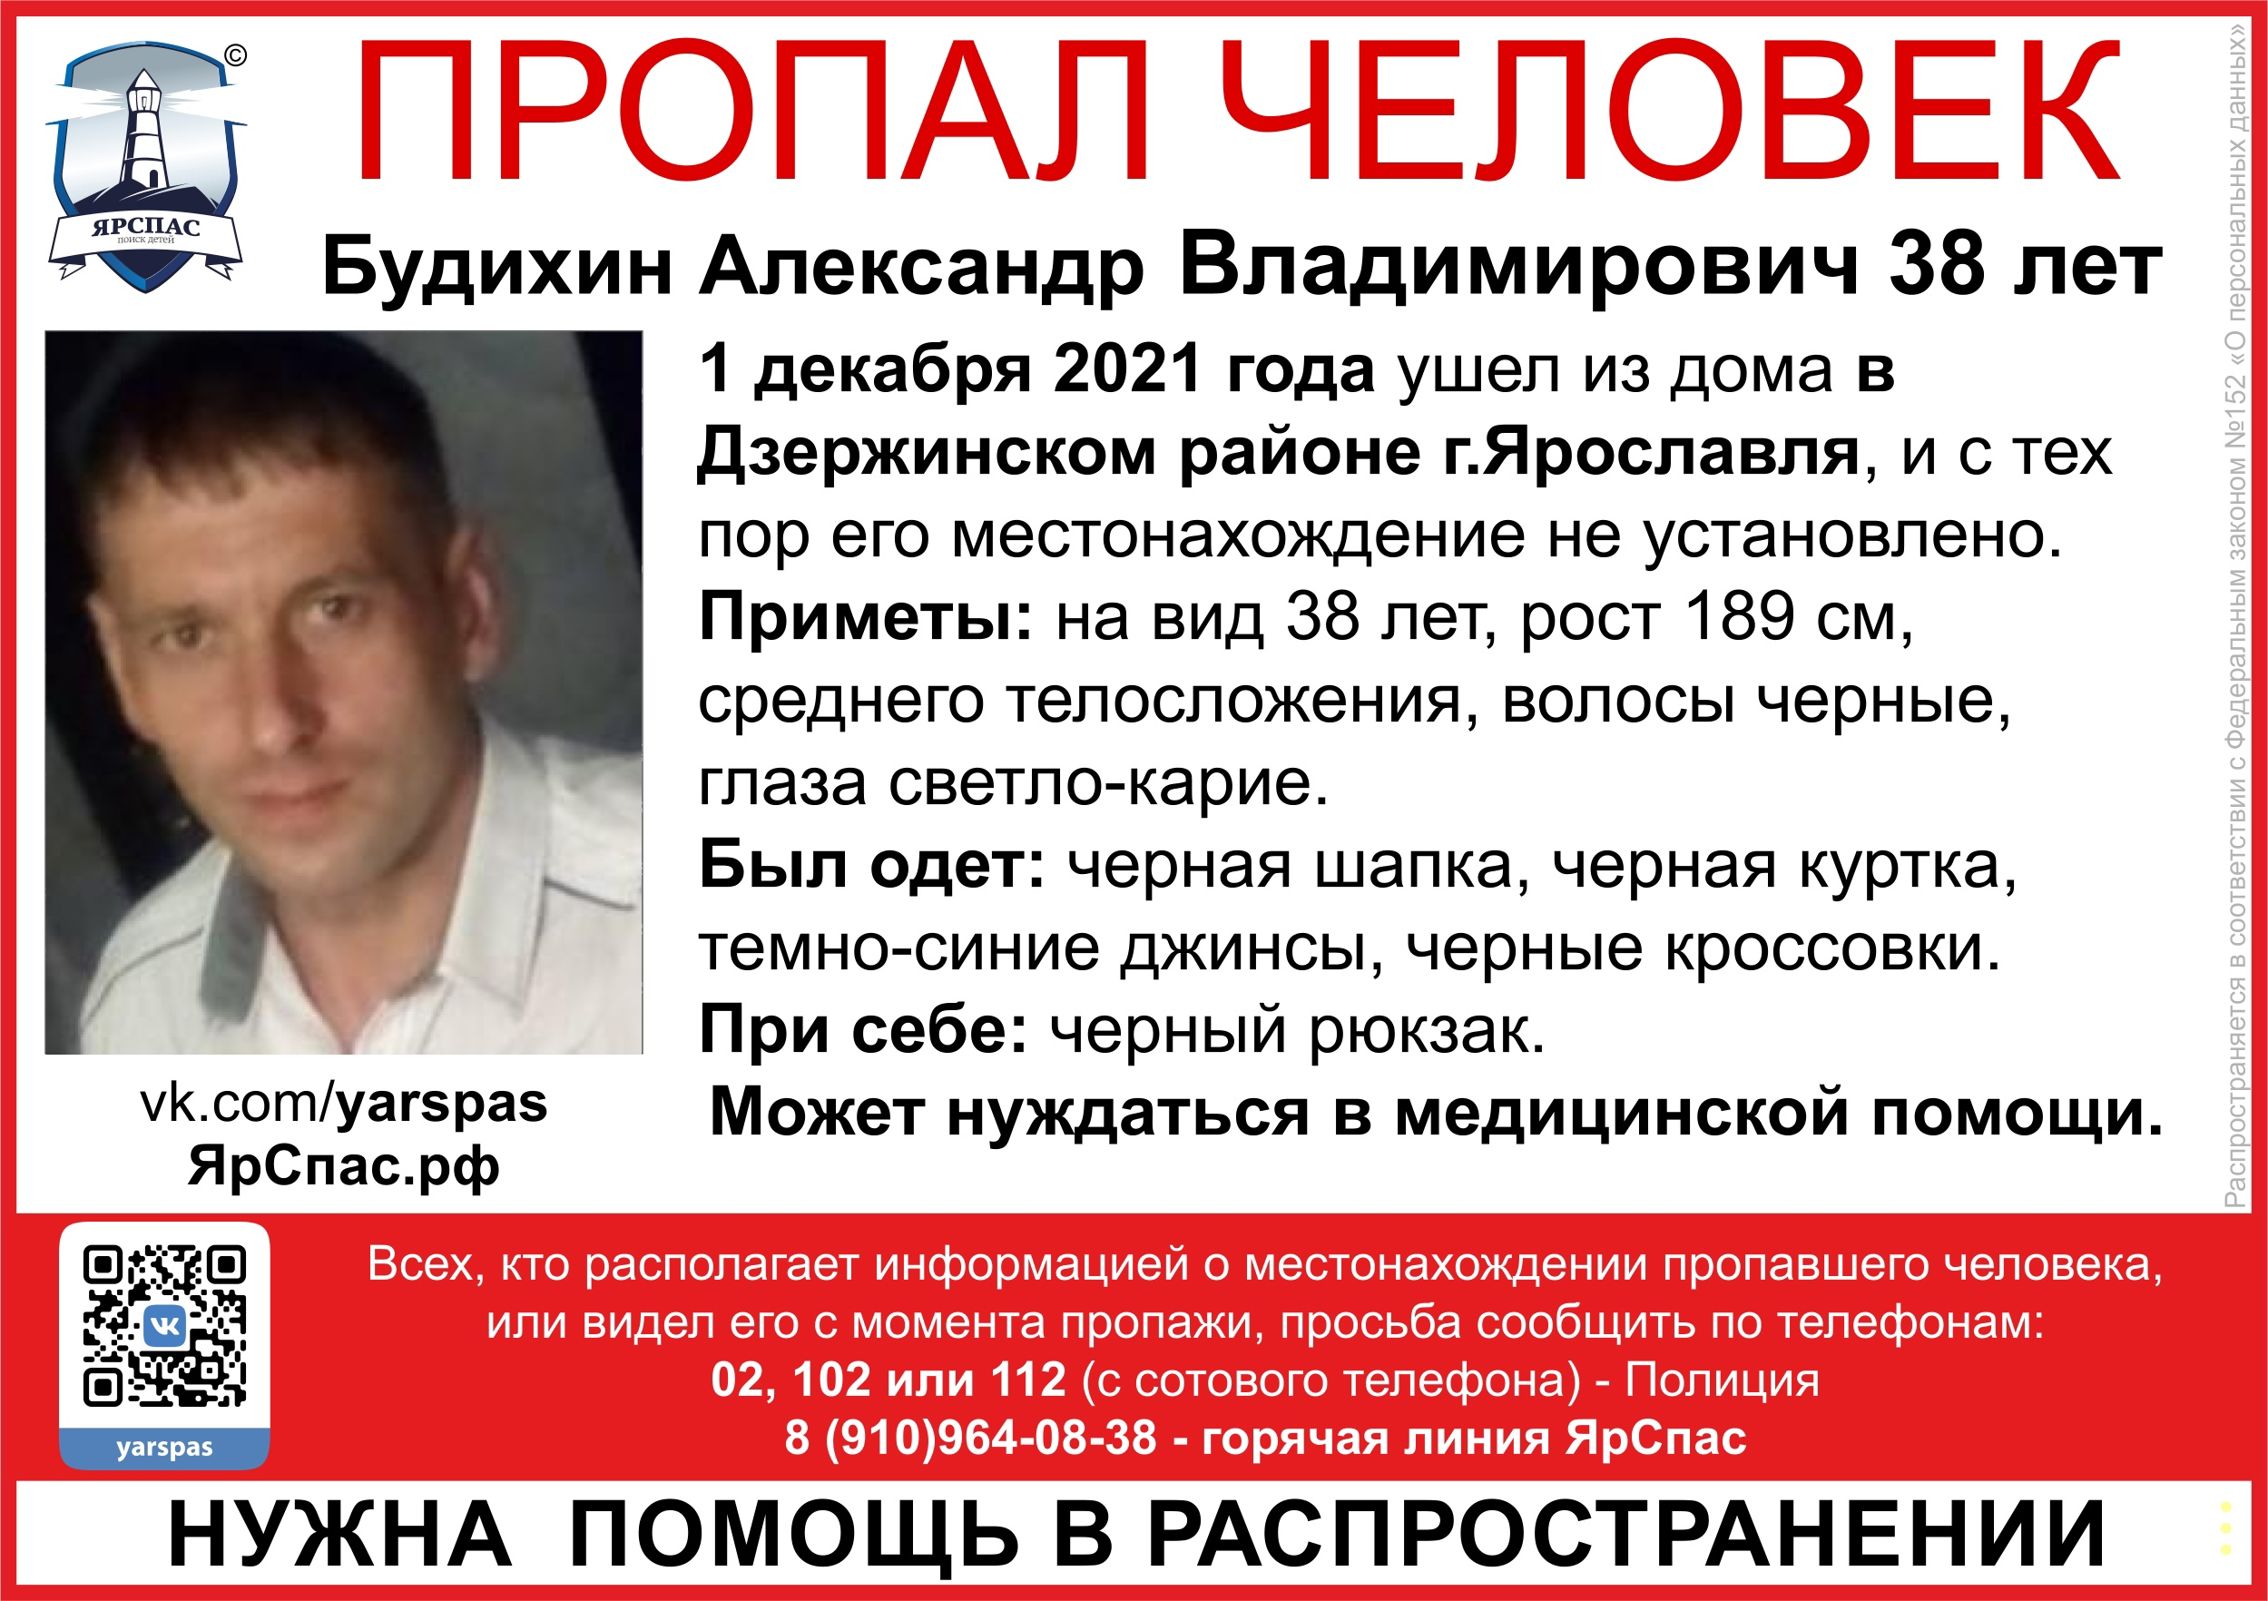 В Ярославле ищут пропавшего мужчину, который может нуждаться в медицинской помощи